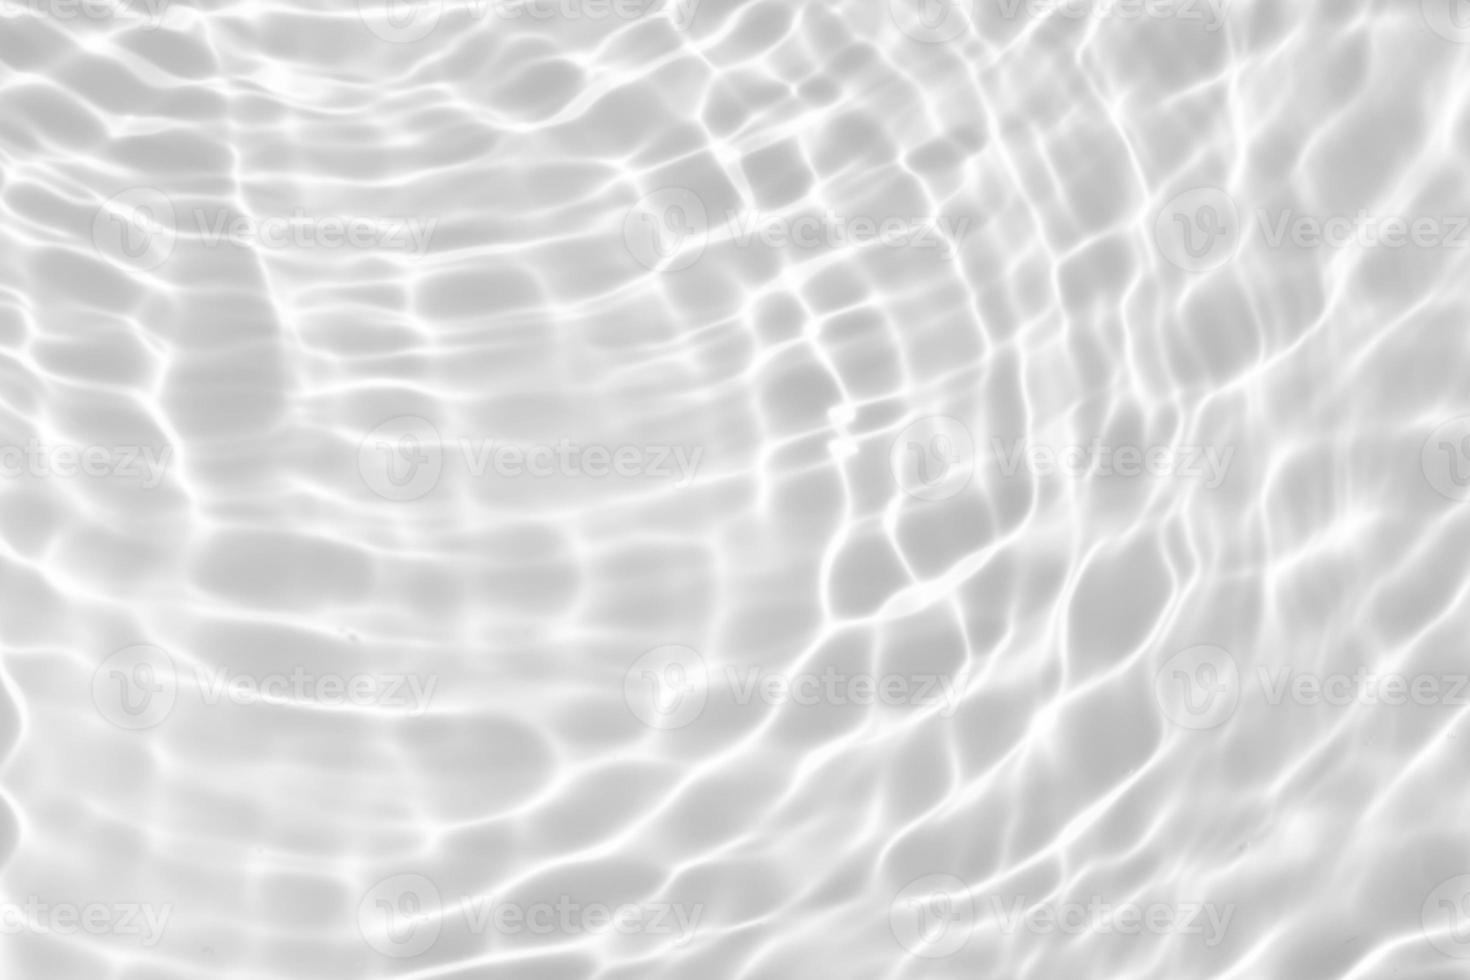 abstrato branco transparente água sombra superfície textura ondulação natural fundo foto